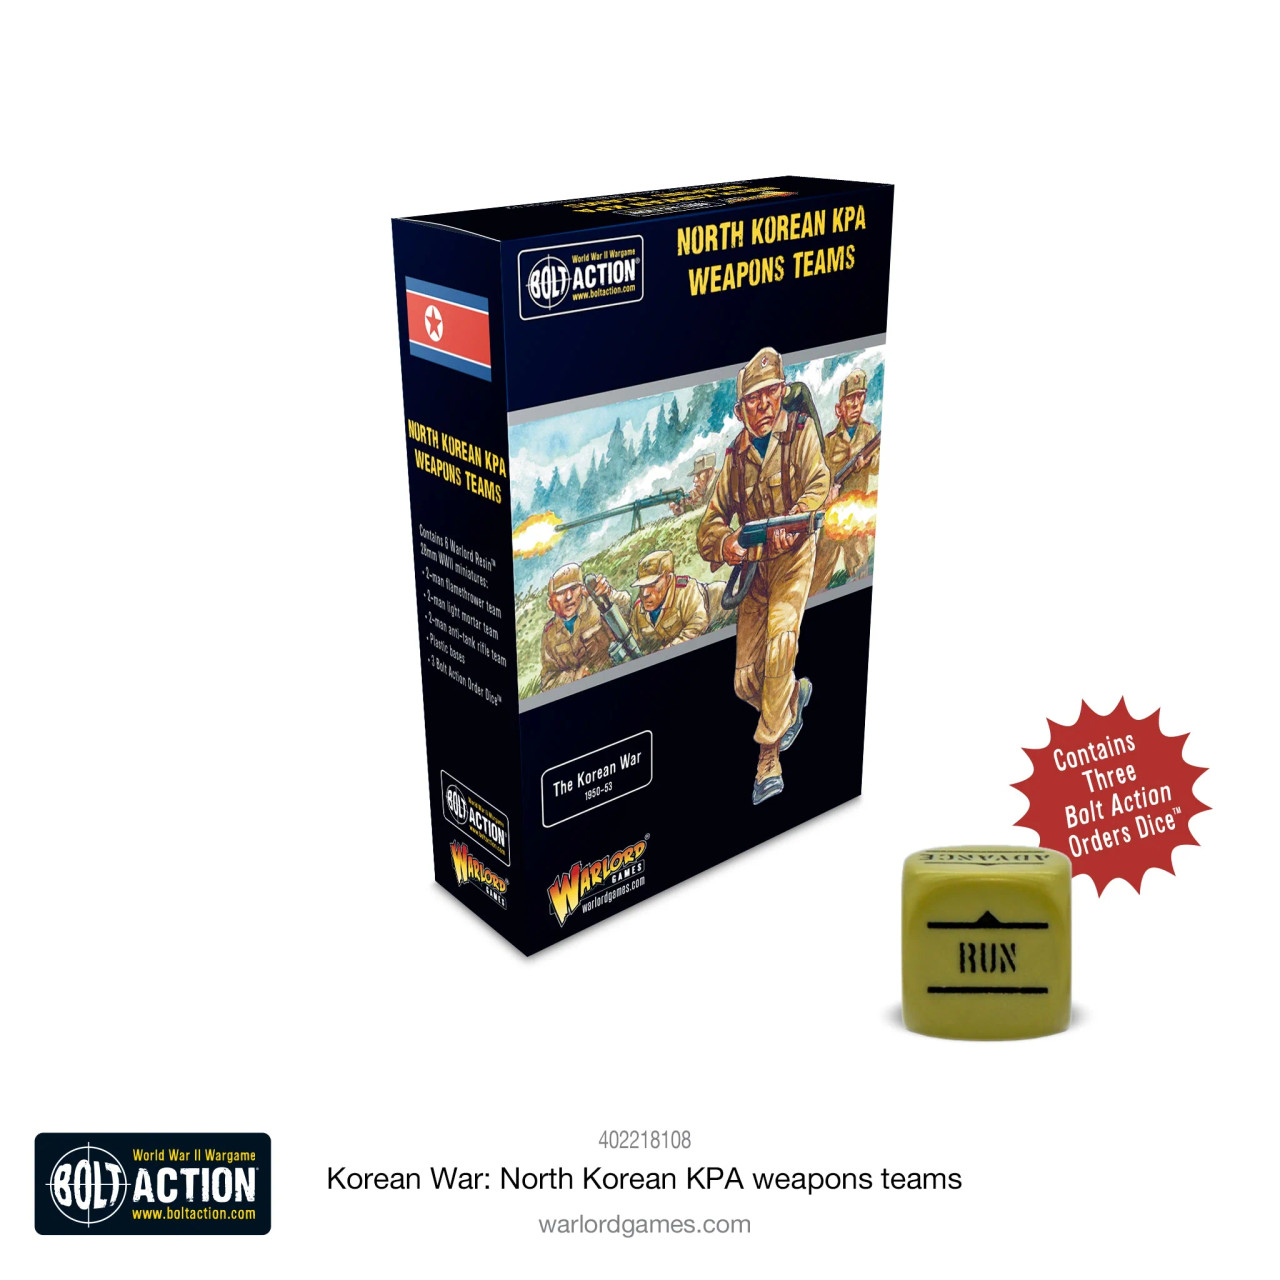 North Korean KPA Weapons Teams - 402218108